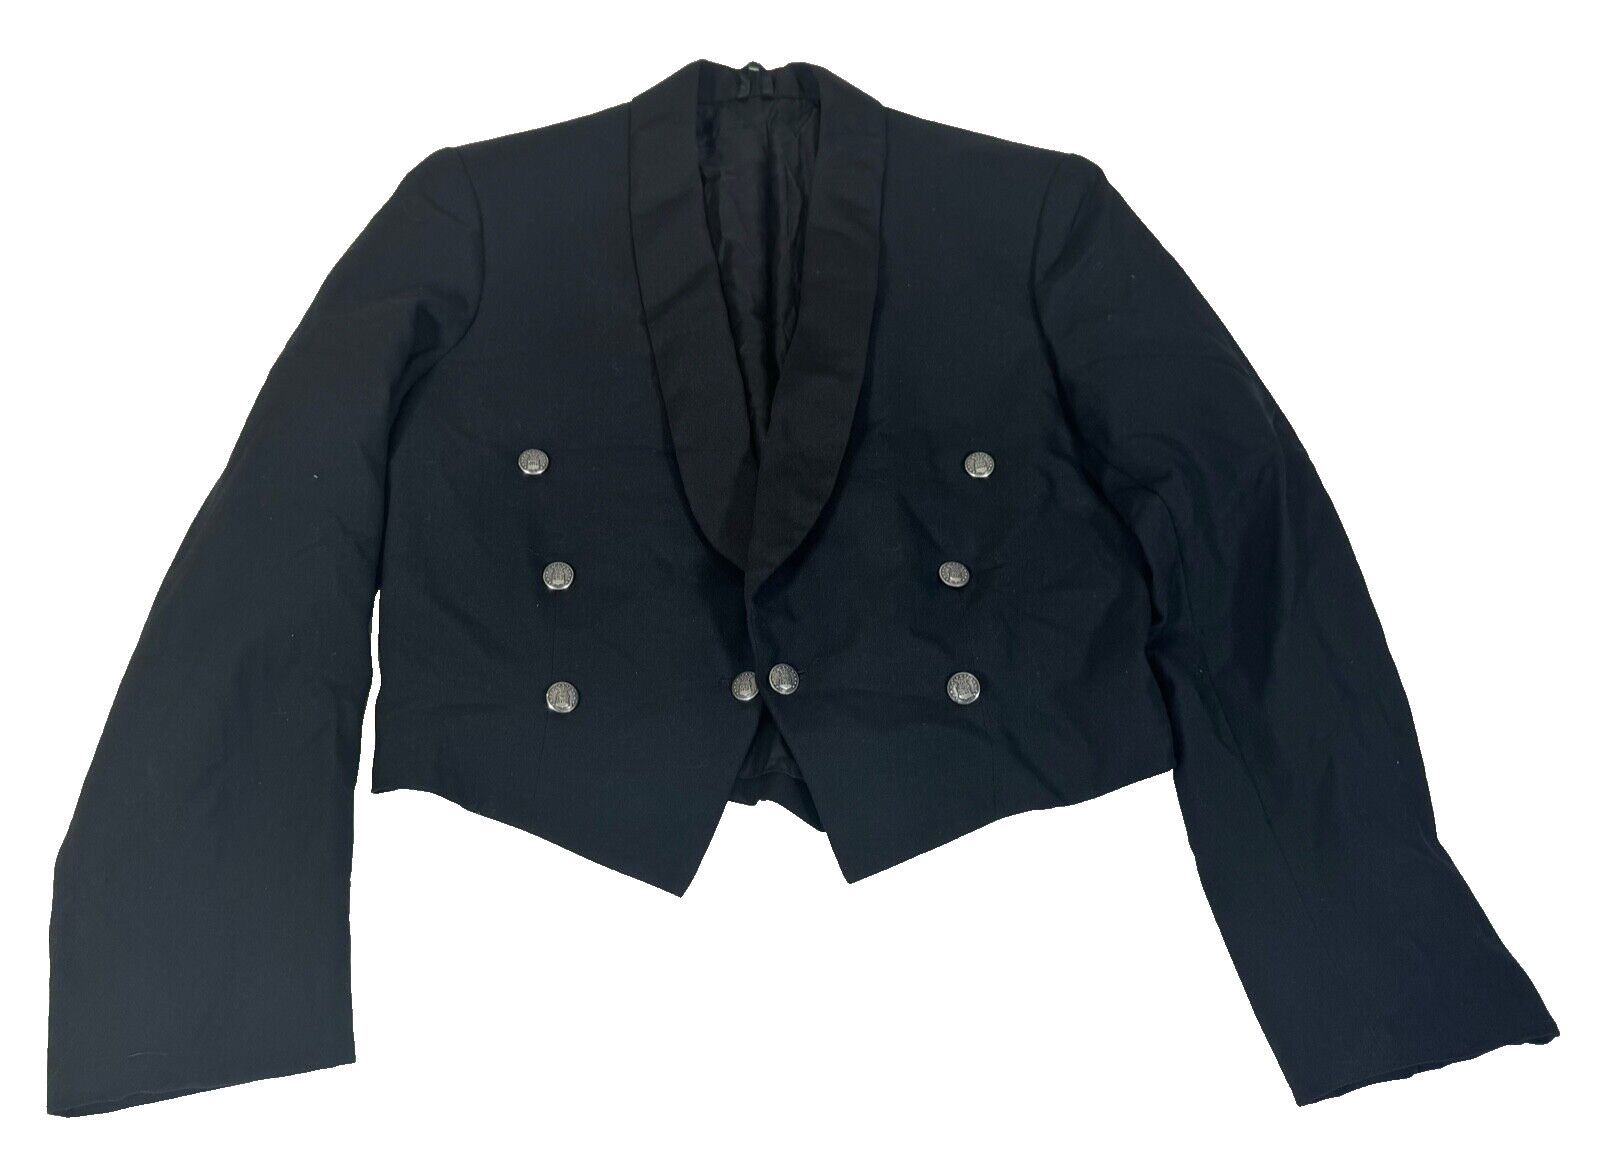 USAF Air Force 1950s Vintage Enlisted Black Mess Dress Uniform Jacket Size 42